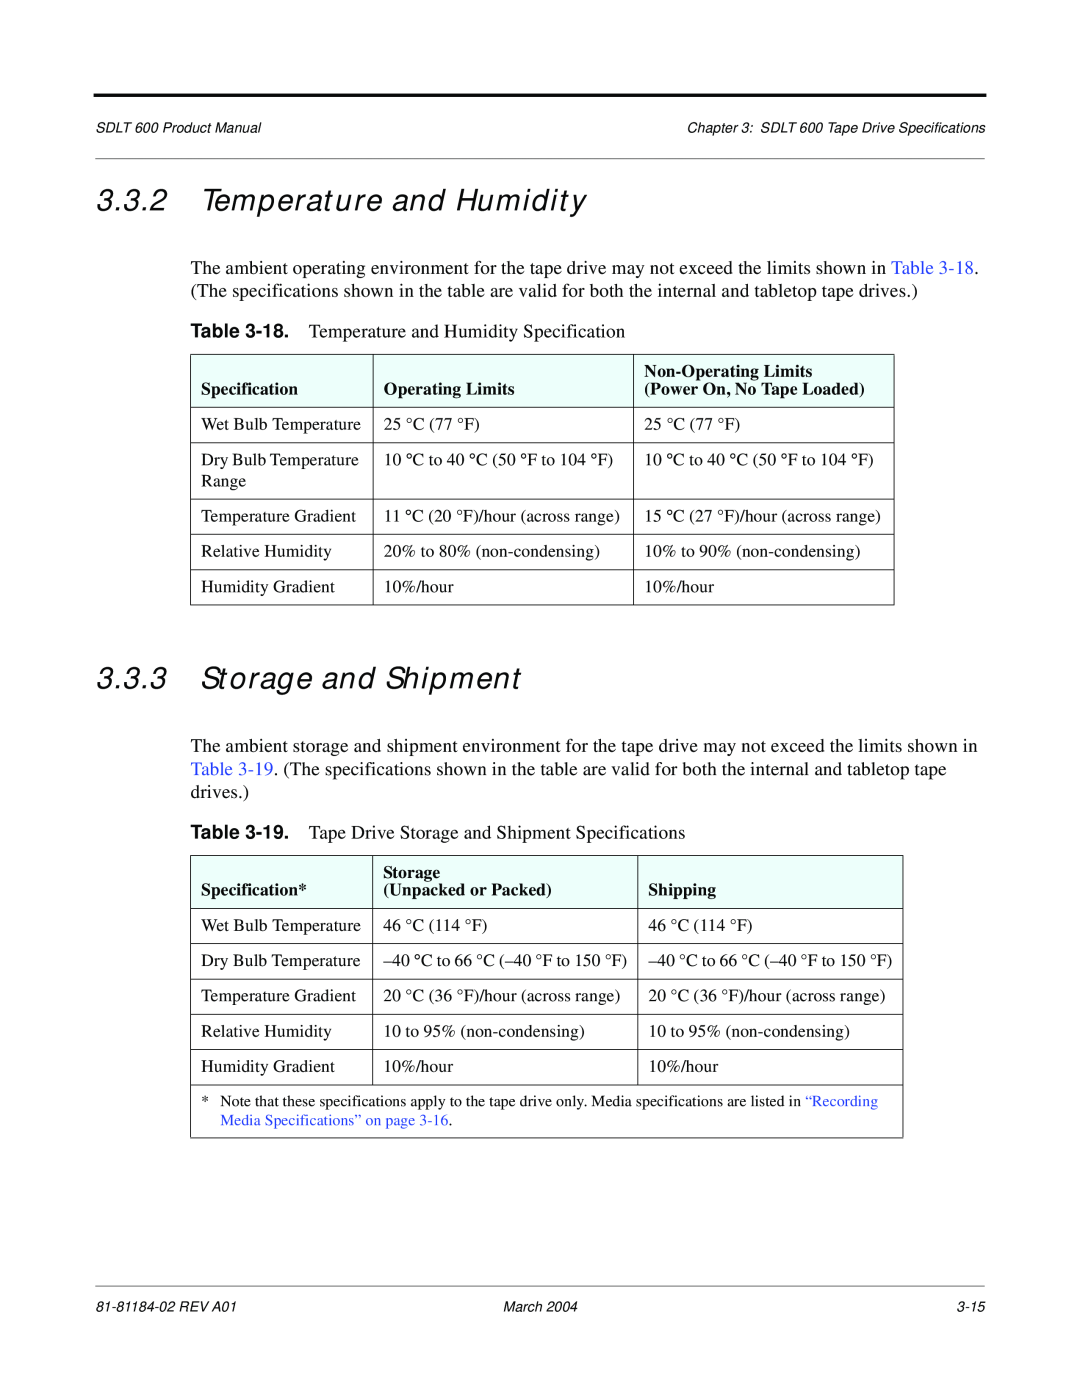 Tandberg Data 600 manual Temperature and Humidity, Storage and Shipment 